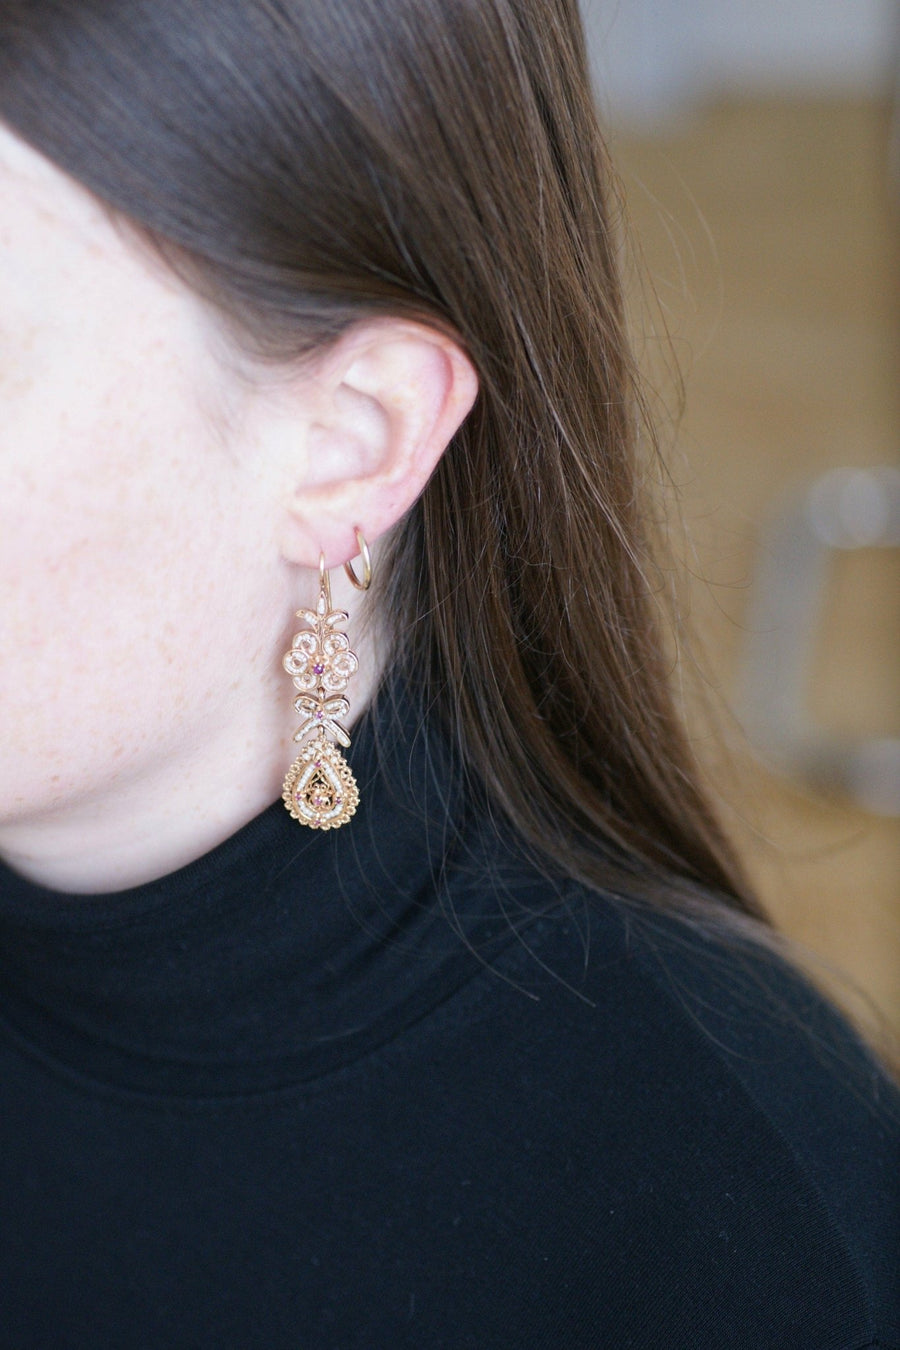 Boucles d'oreilles anciennes, perles, rubis sur or rose filigrané - Galerie Pénélope